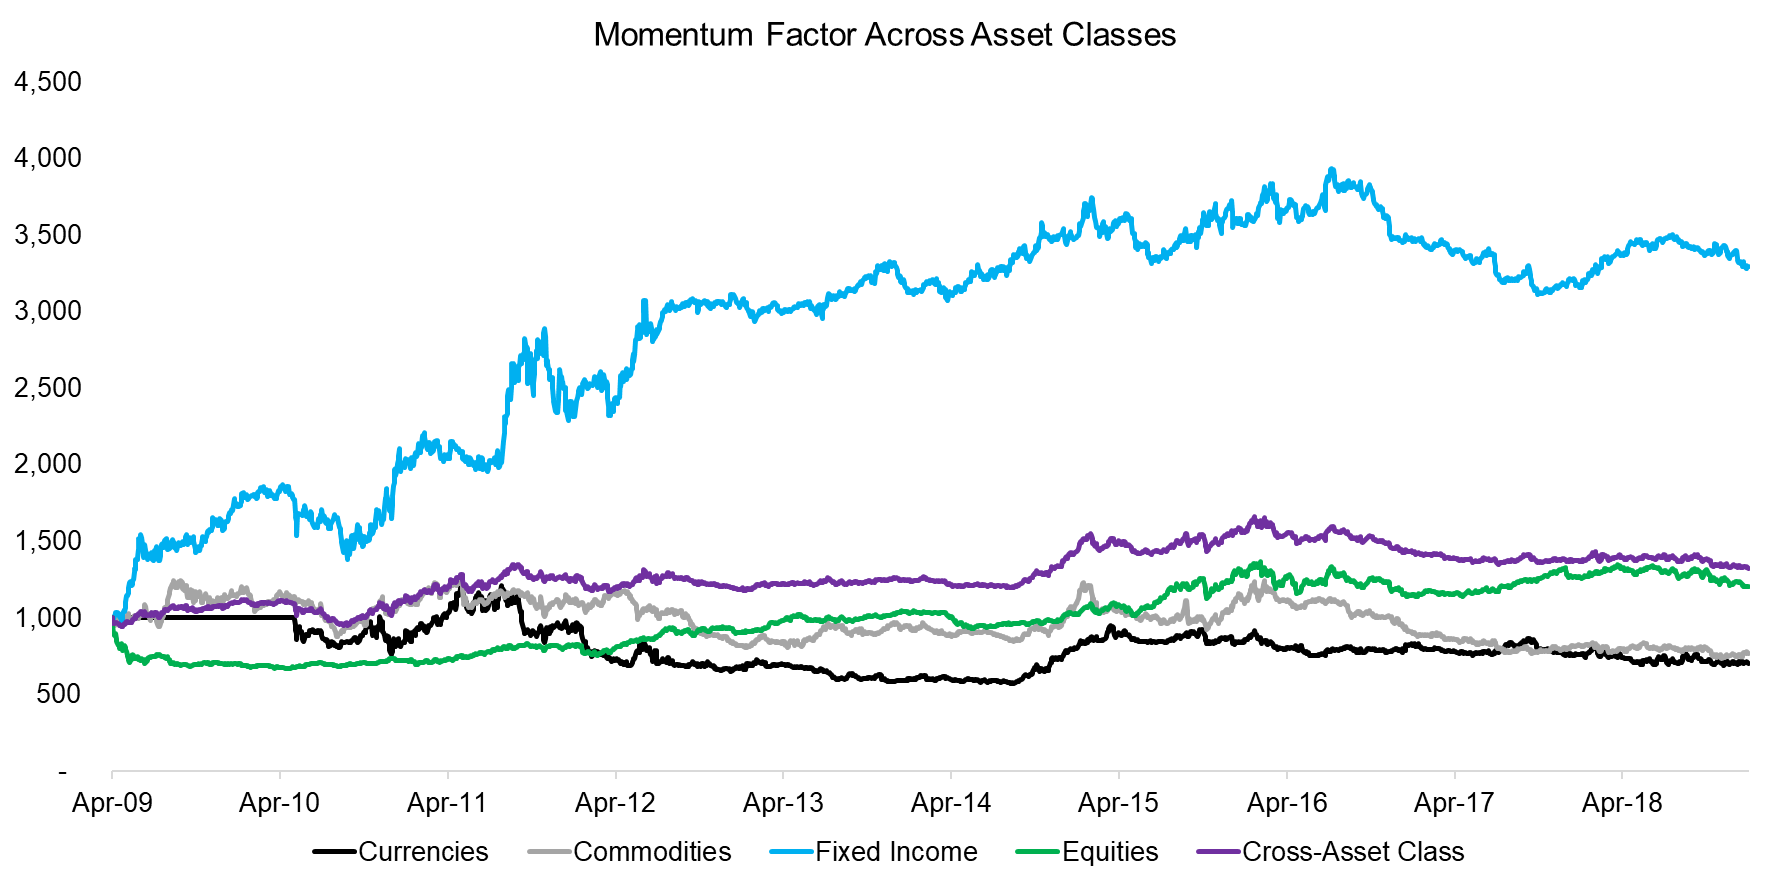 Momentum Factor Across Asset Classes